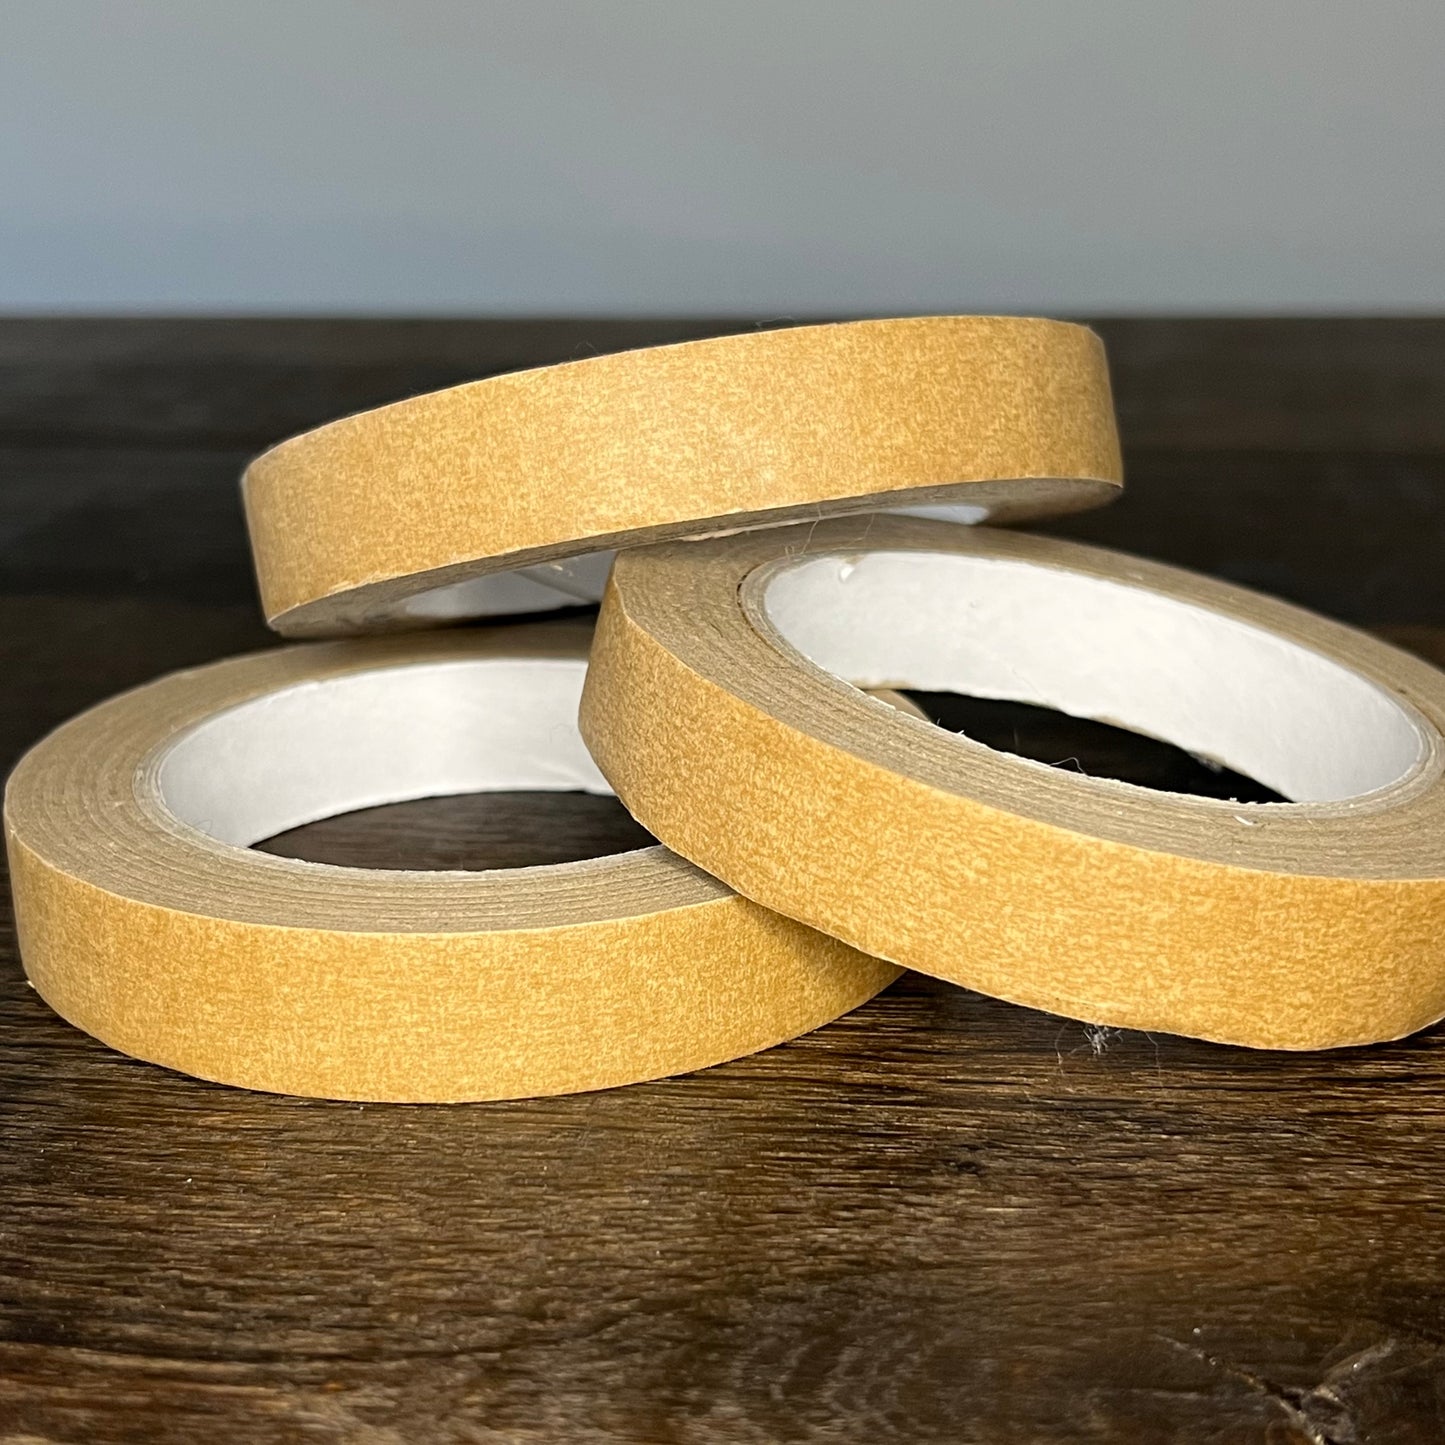 Self Adhesive Brown Paper Tape - Various Designs